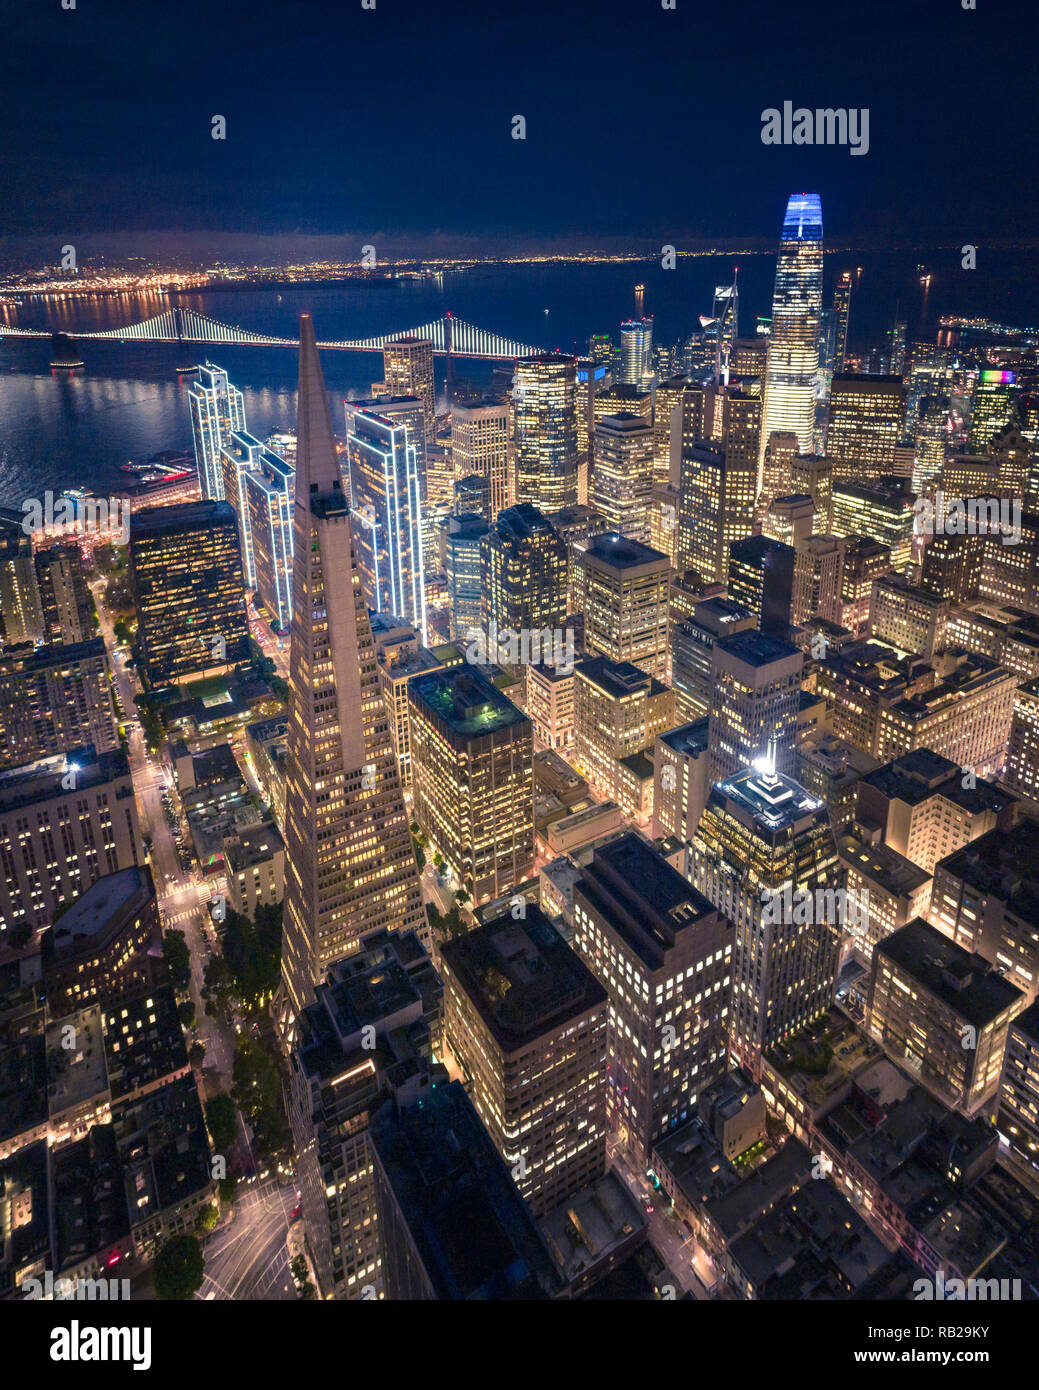 Vue aérienne de la ville de San Francisco de nuit, California, USA Banque D'Images